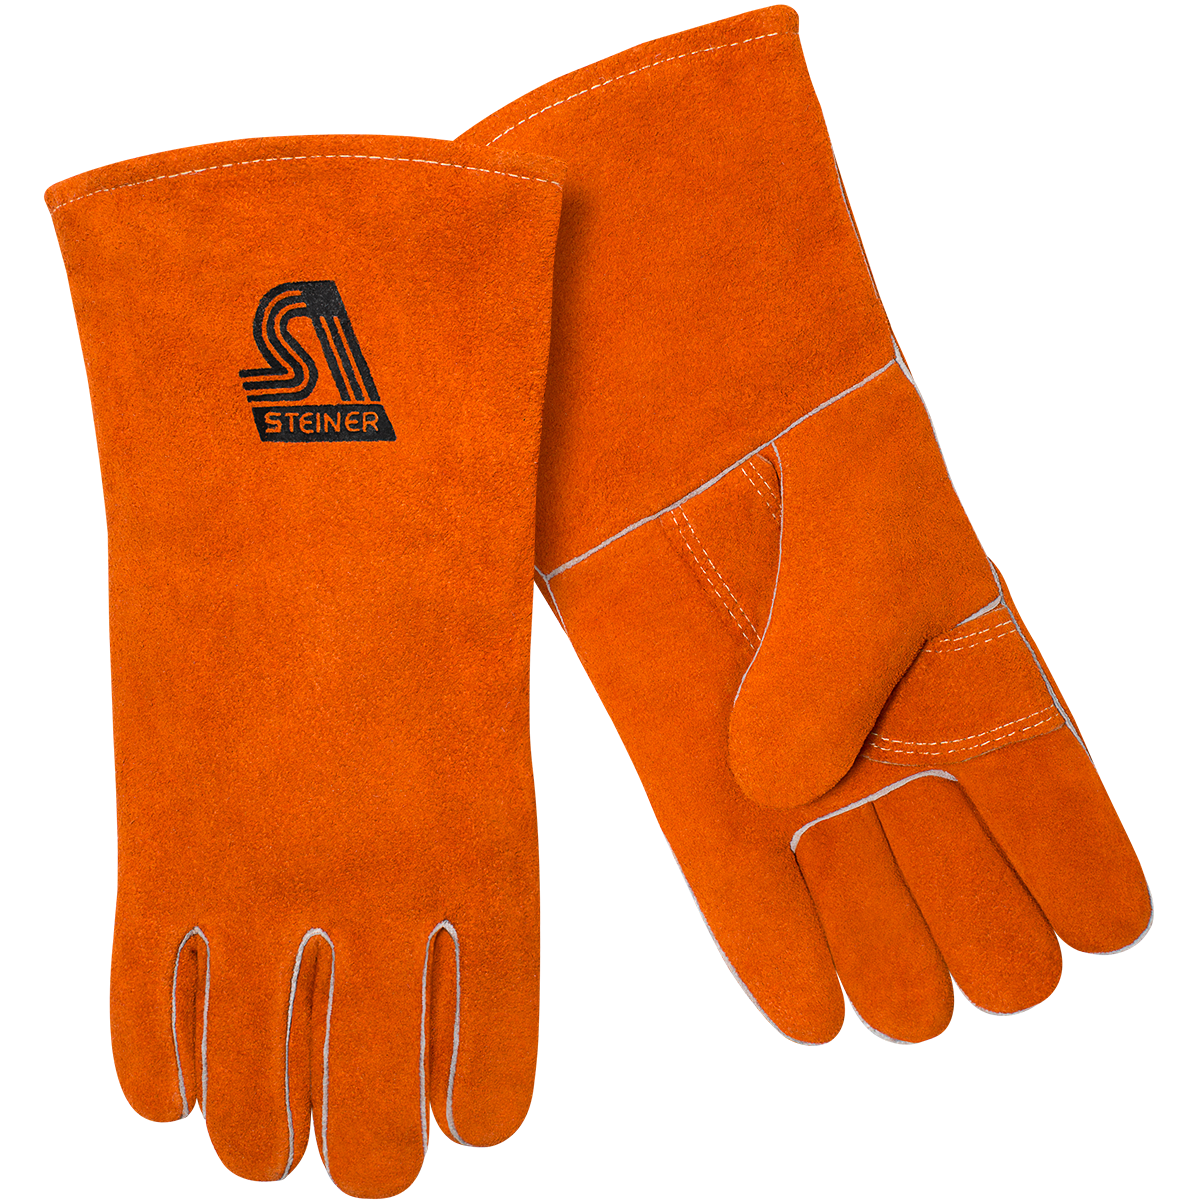 Gloves clipart safety glove. Standard shoulder split cowhide